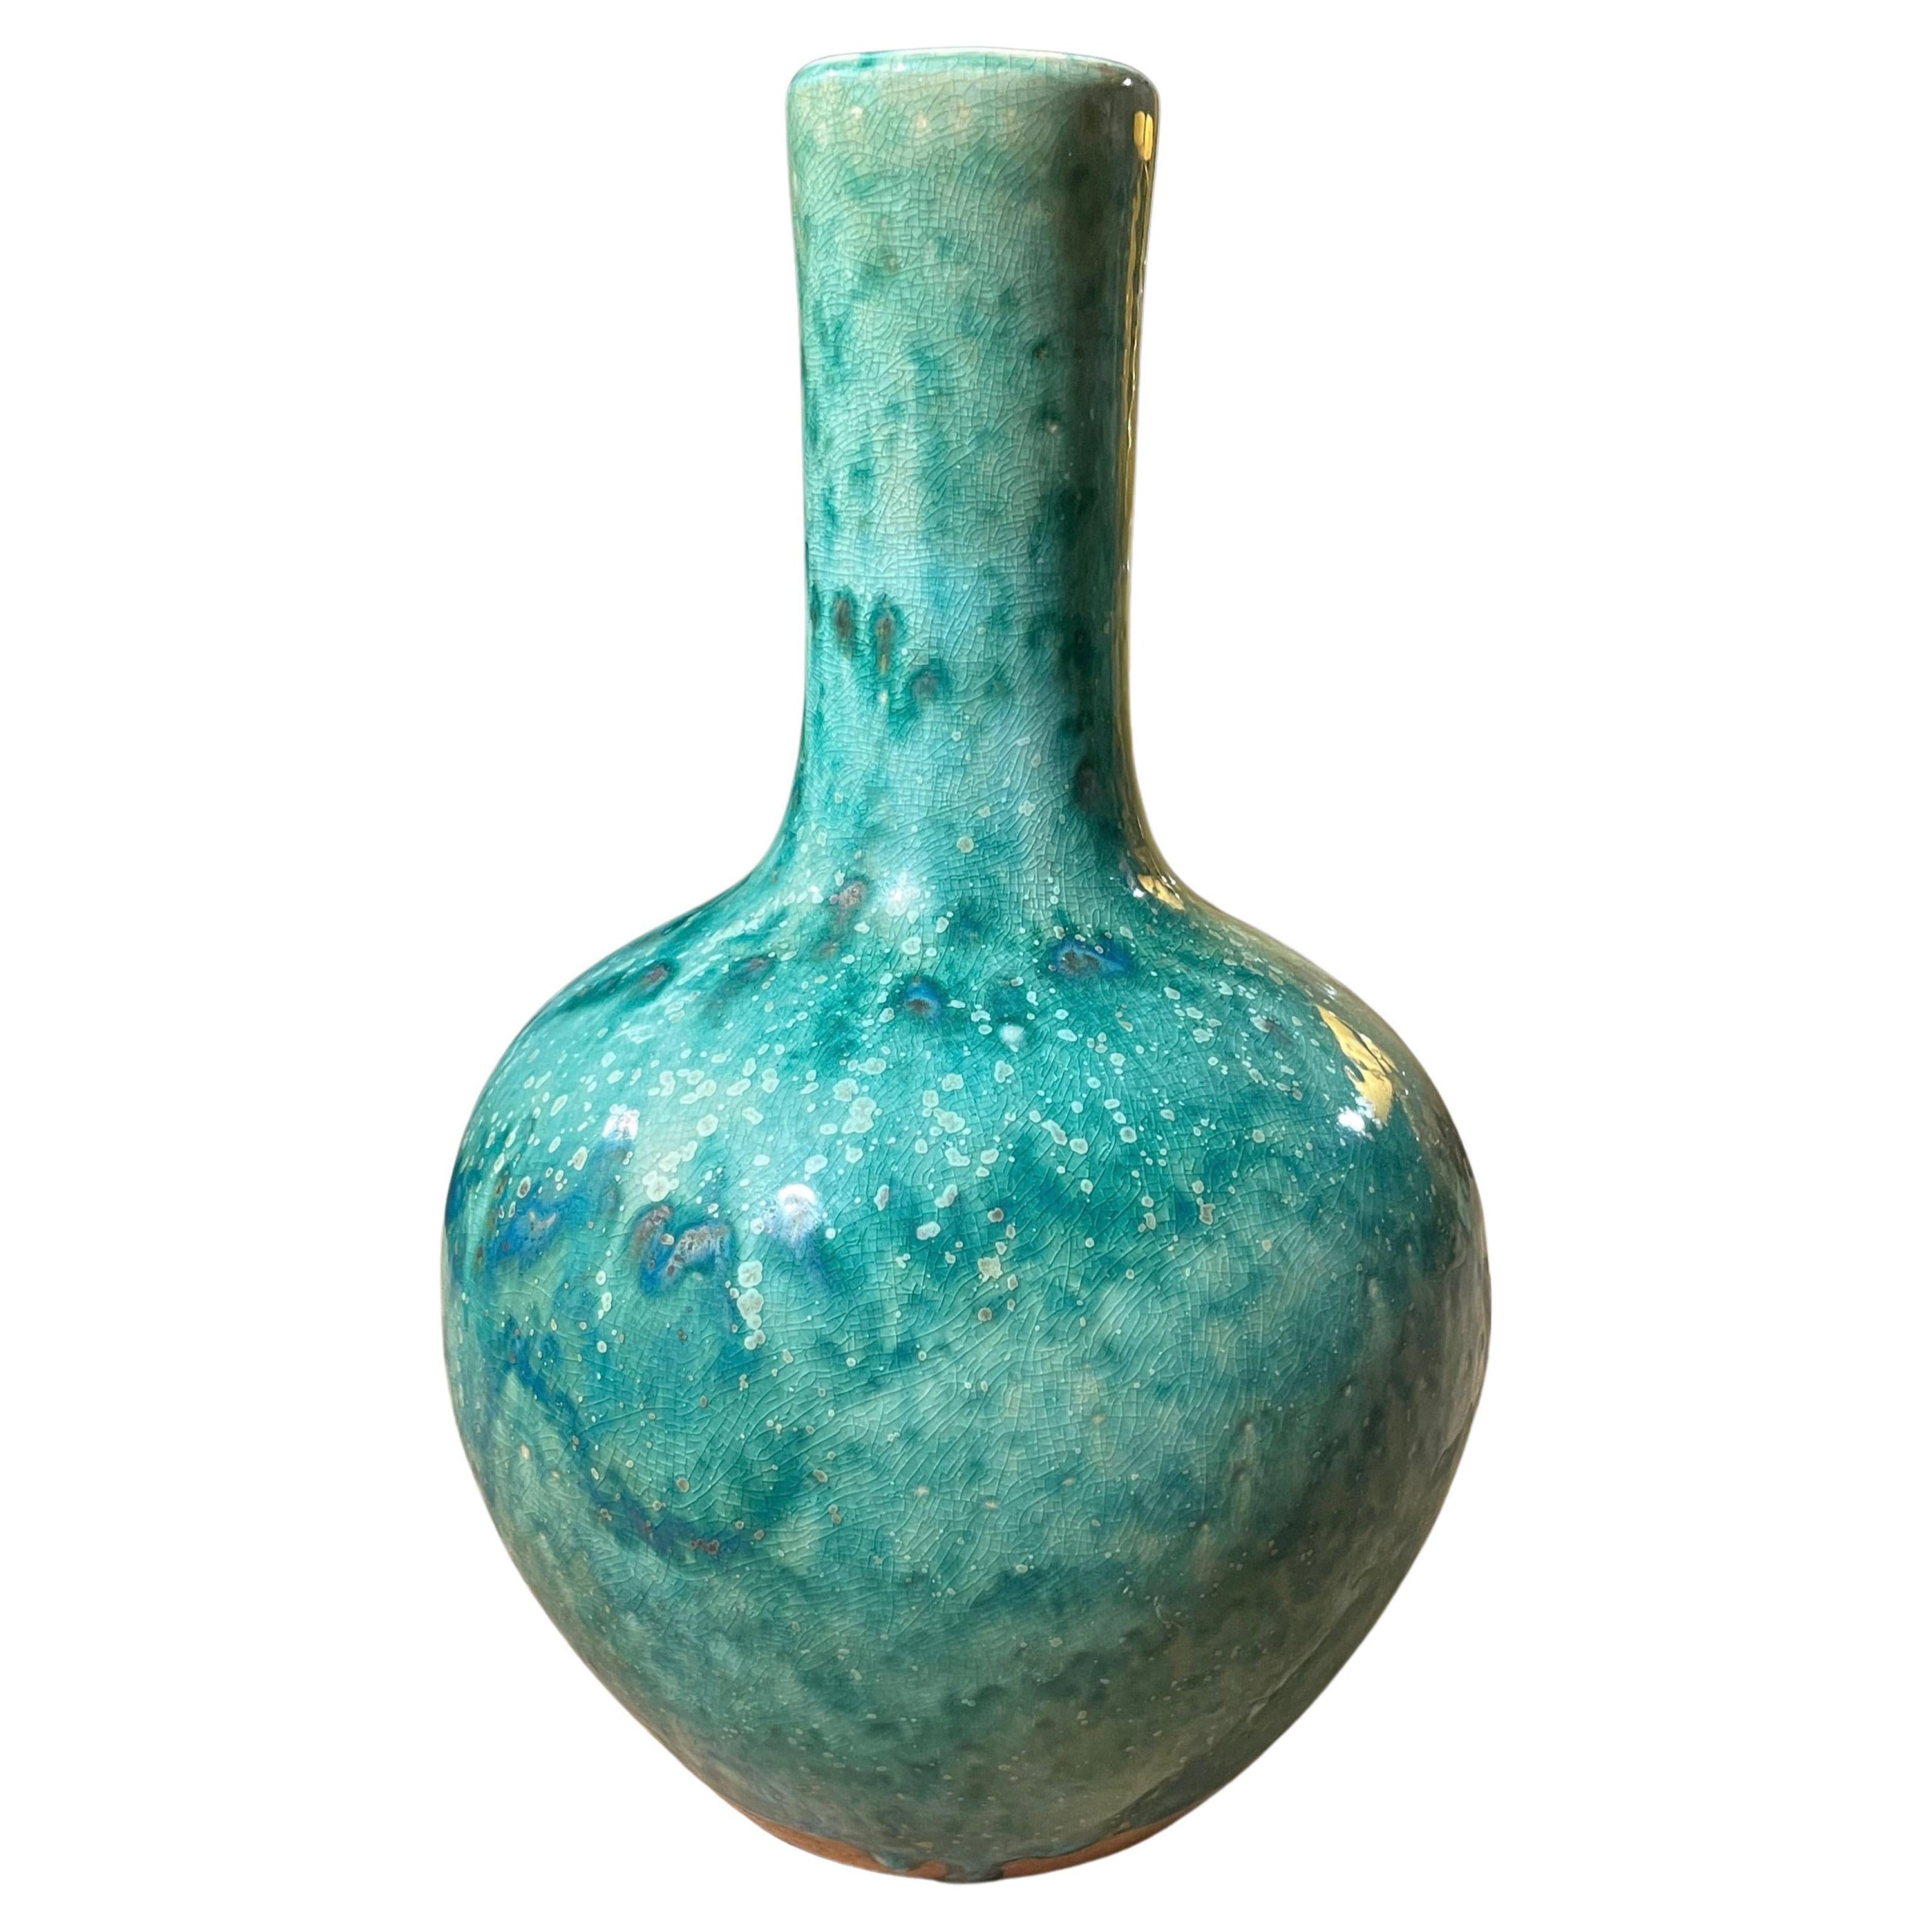 Turquoise Mottled Glaze Funnel Shape Vase, China, Contemporary